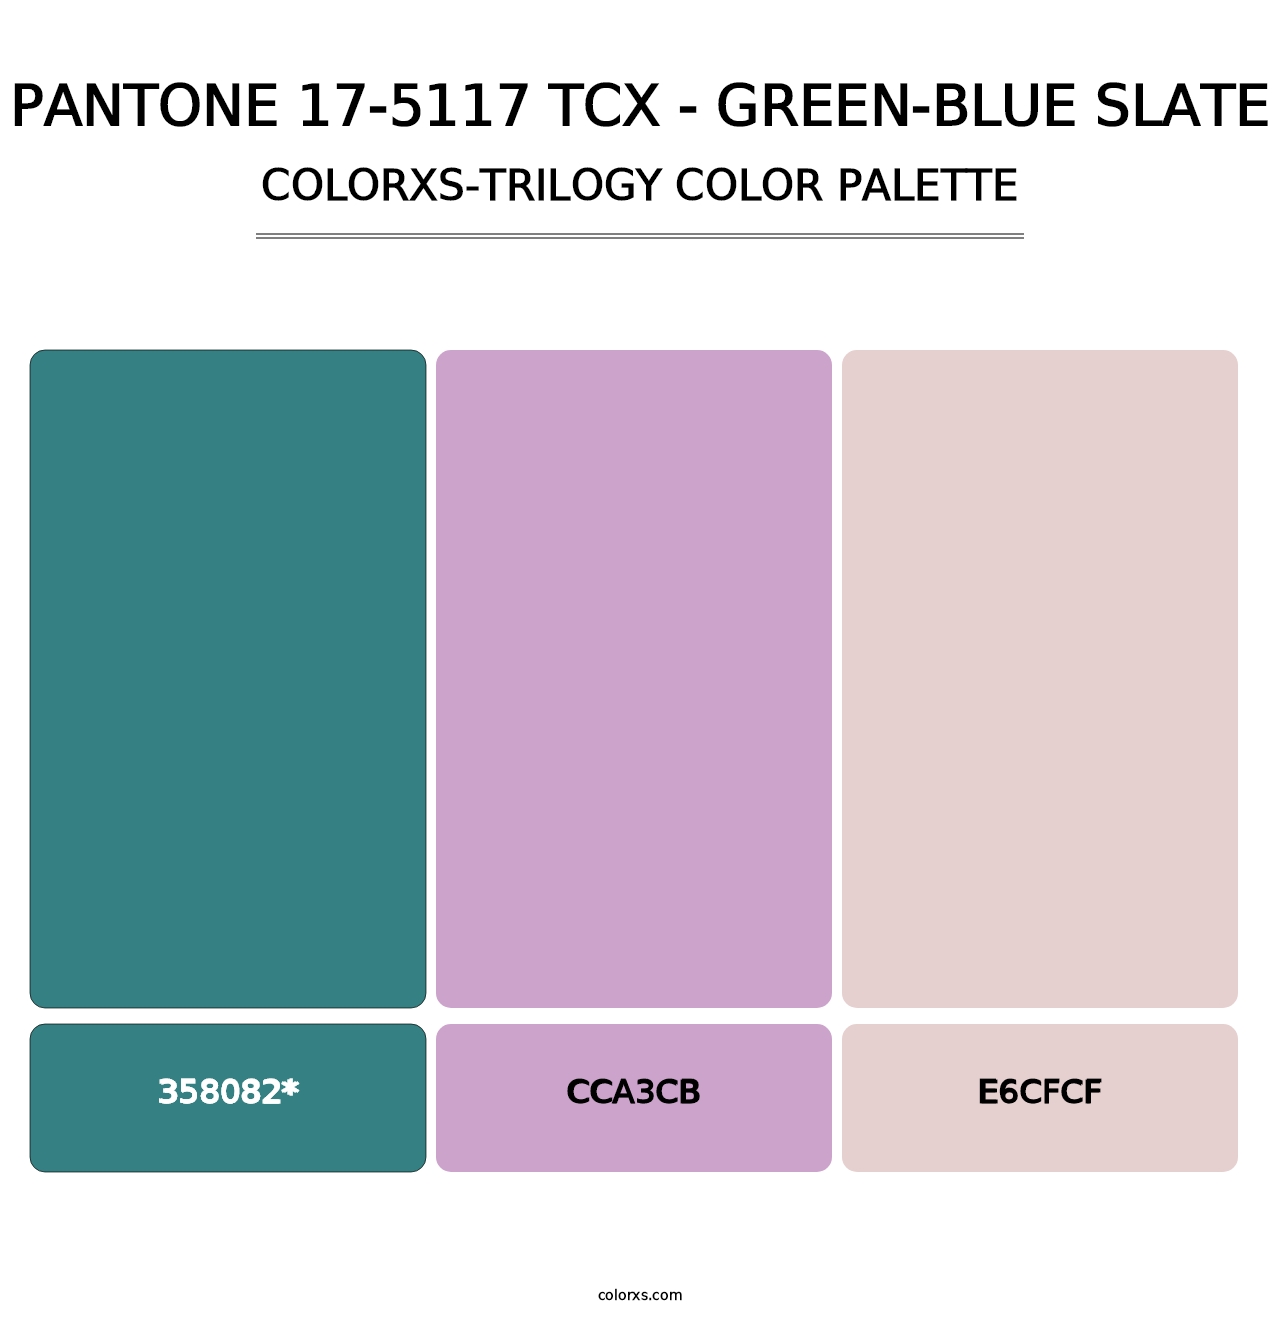 PANTONE 17-5117 TCX - Green-Blue Slate - Colorxs Trilogy Palette